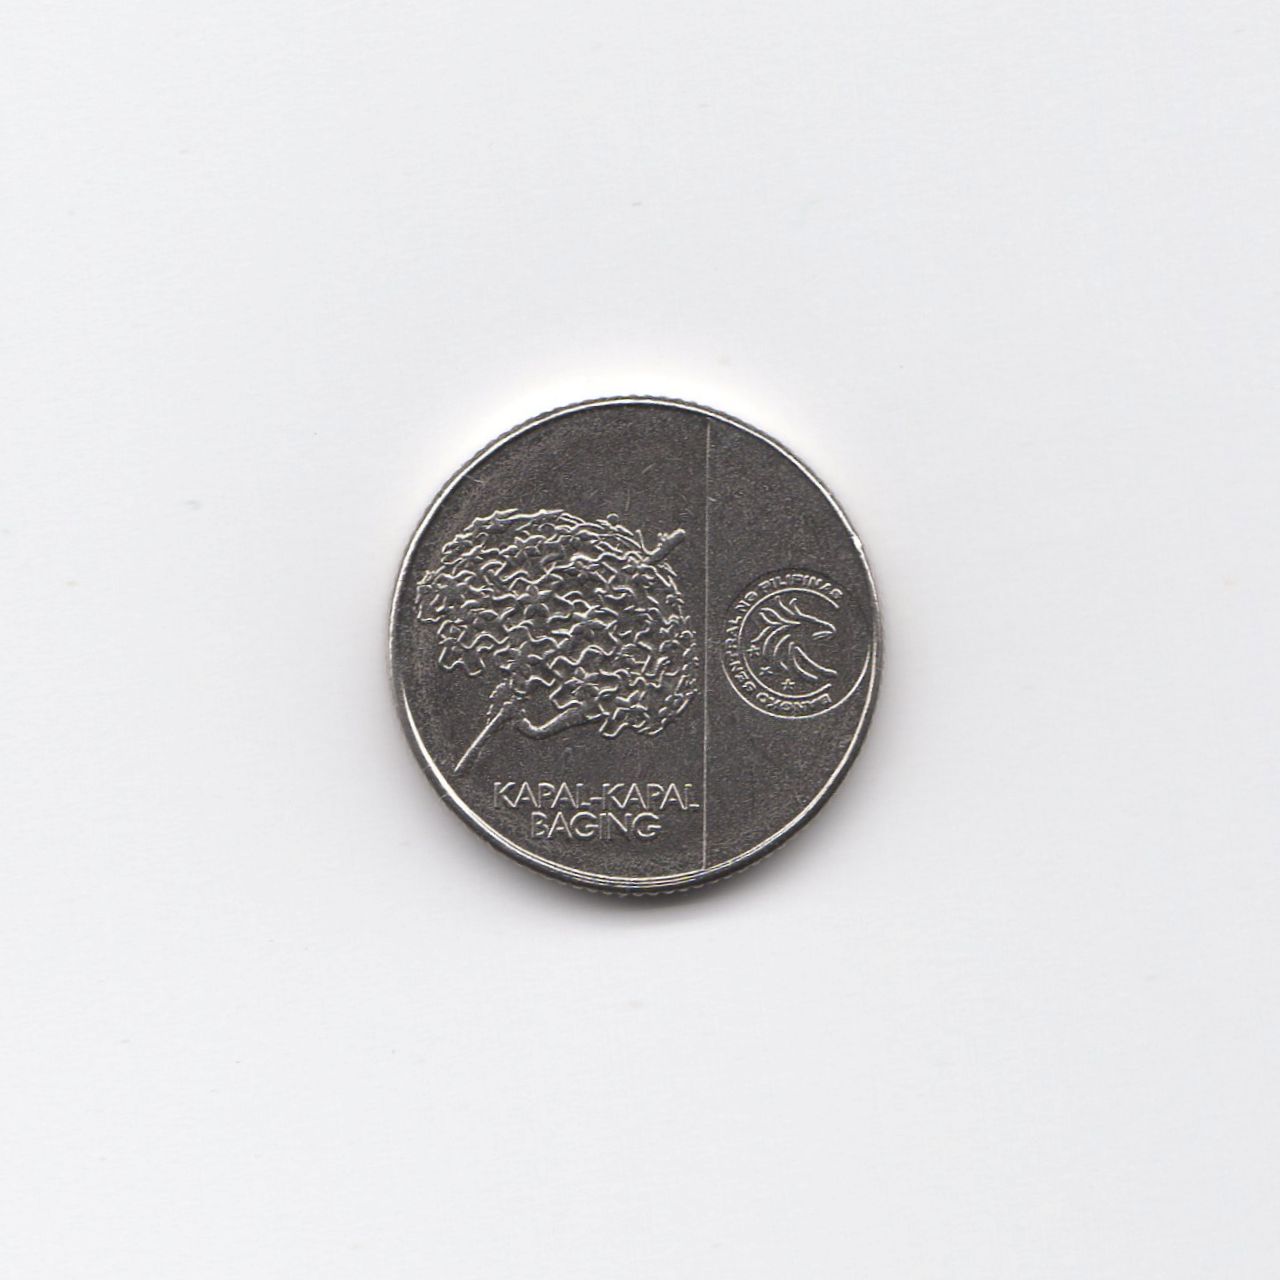 フィリピンの硬貨 2017年 5 SENTIMO